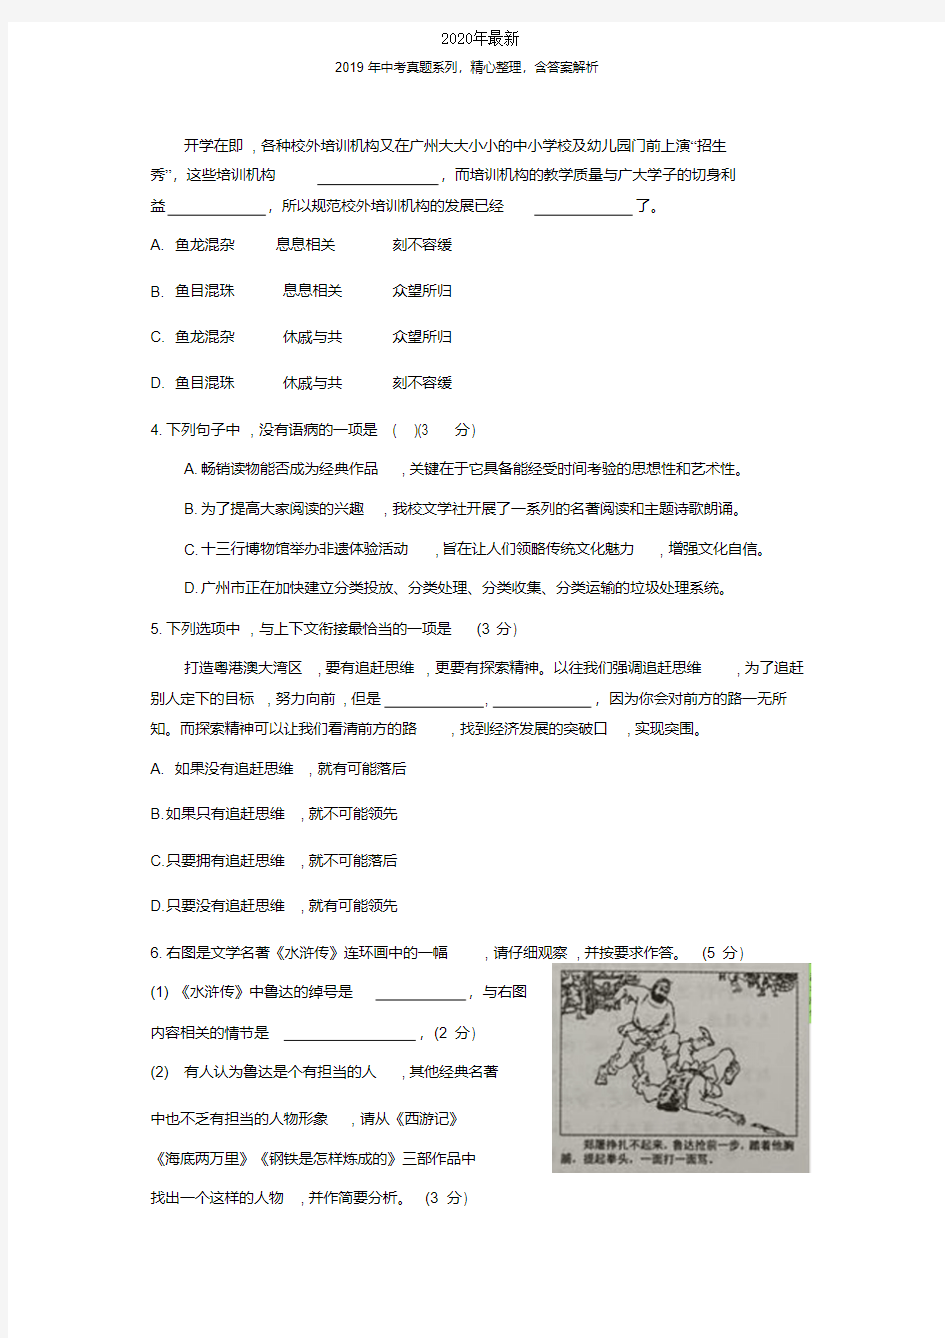 【2020年中考真题系列】广东省广州市2020年中考语文真题试卷及答案